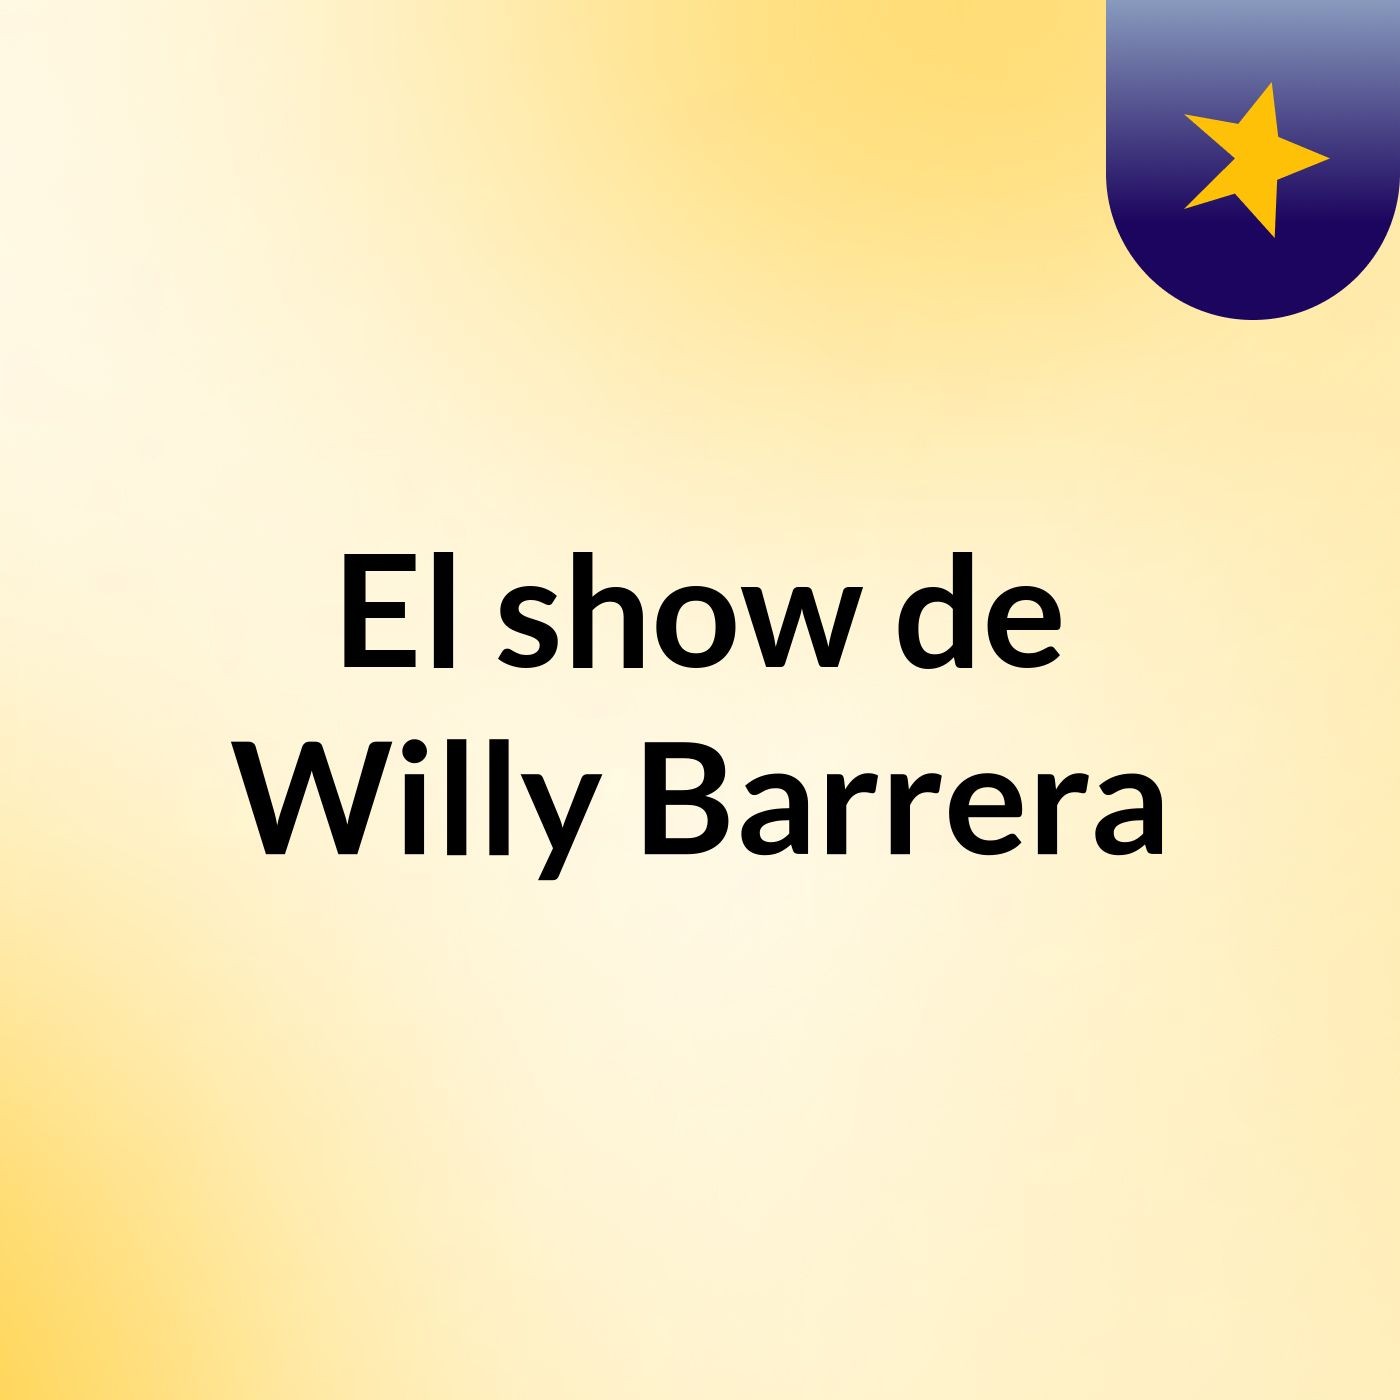 El show de Willy Barrera